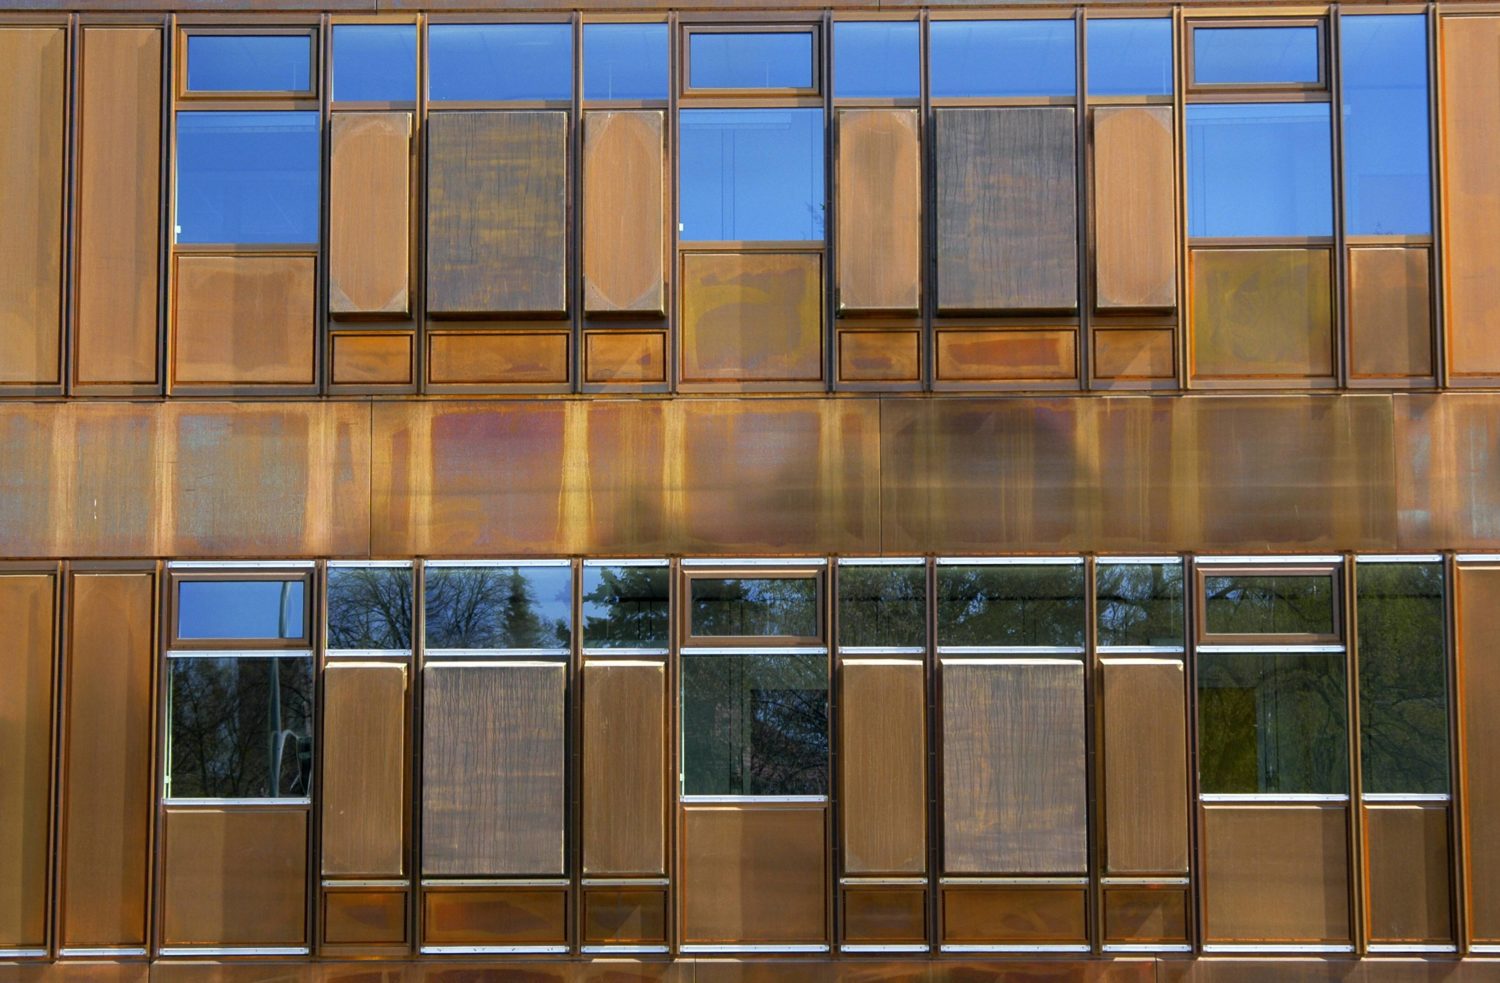 Die Fassade der Rostlaube, eins der Hauptgebäude der FU Berlin. Foto: Imago Images/Schöning